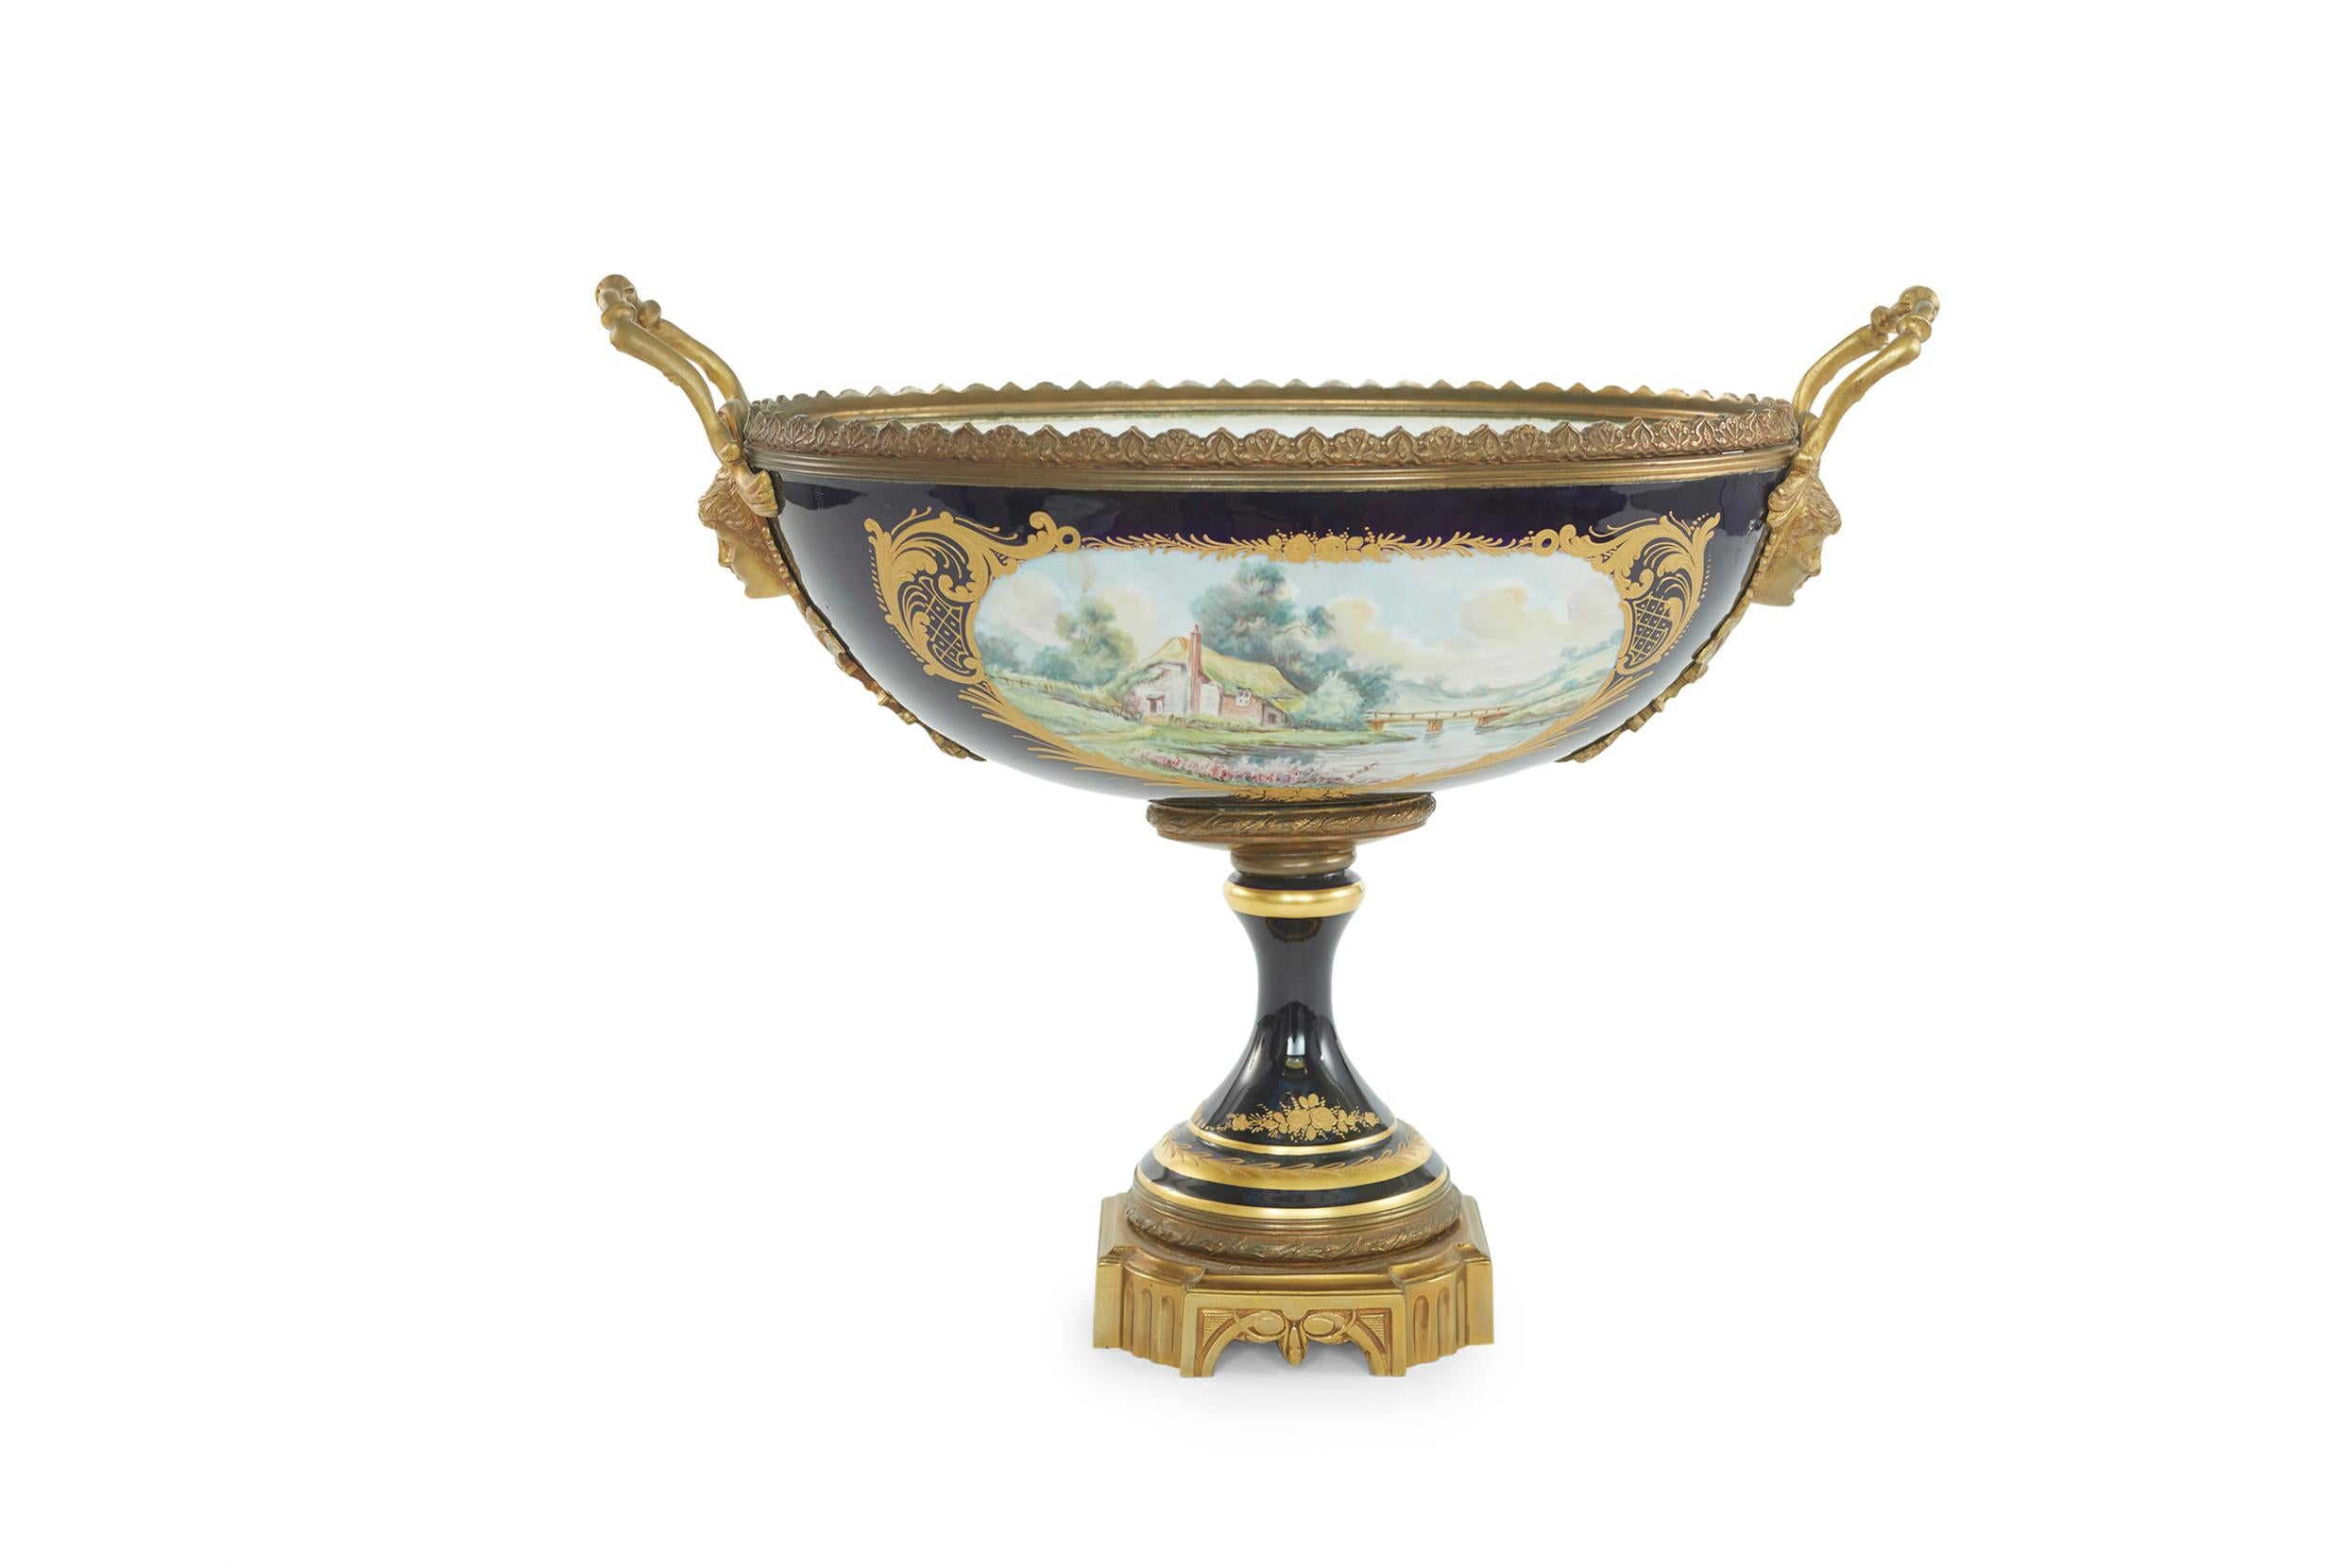 Centre de table du 19e siècle en porcelaine émaillée de Sèvres, monté sur bronze doré. La pièce est en très bon état. Légère usure due à l'âge et à l'utilisation. Marque du fabricant soussignée. Le centre de table mesure environ 19 1/5 pouces de